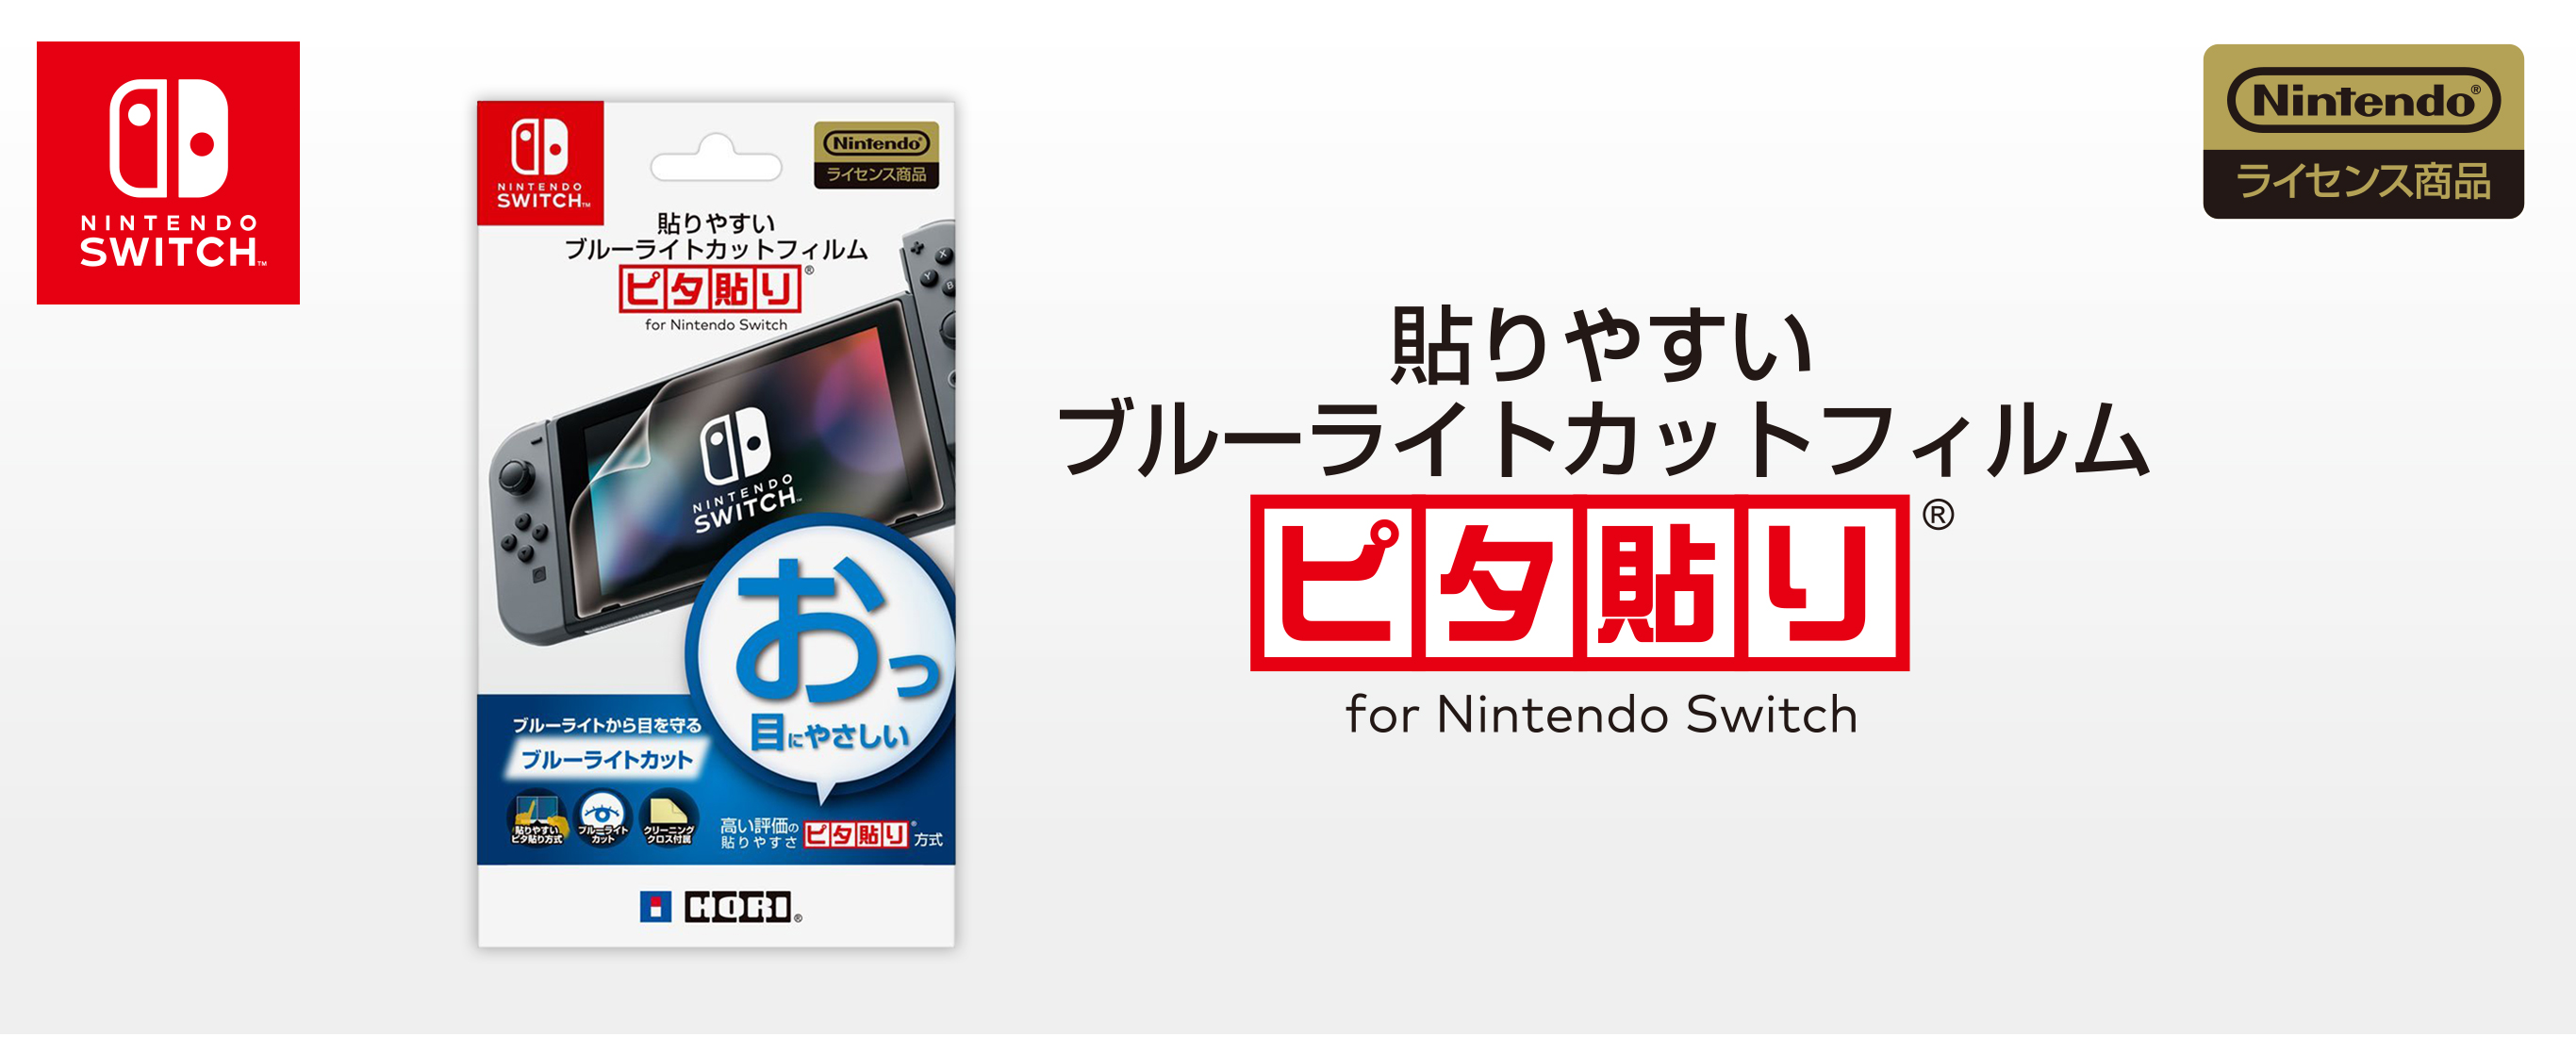 株式会社 HORI | 貼りやすいブルーライトカットフィルム ピタ貼り for Nintendo Switch